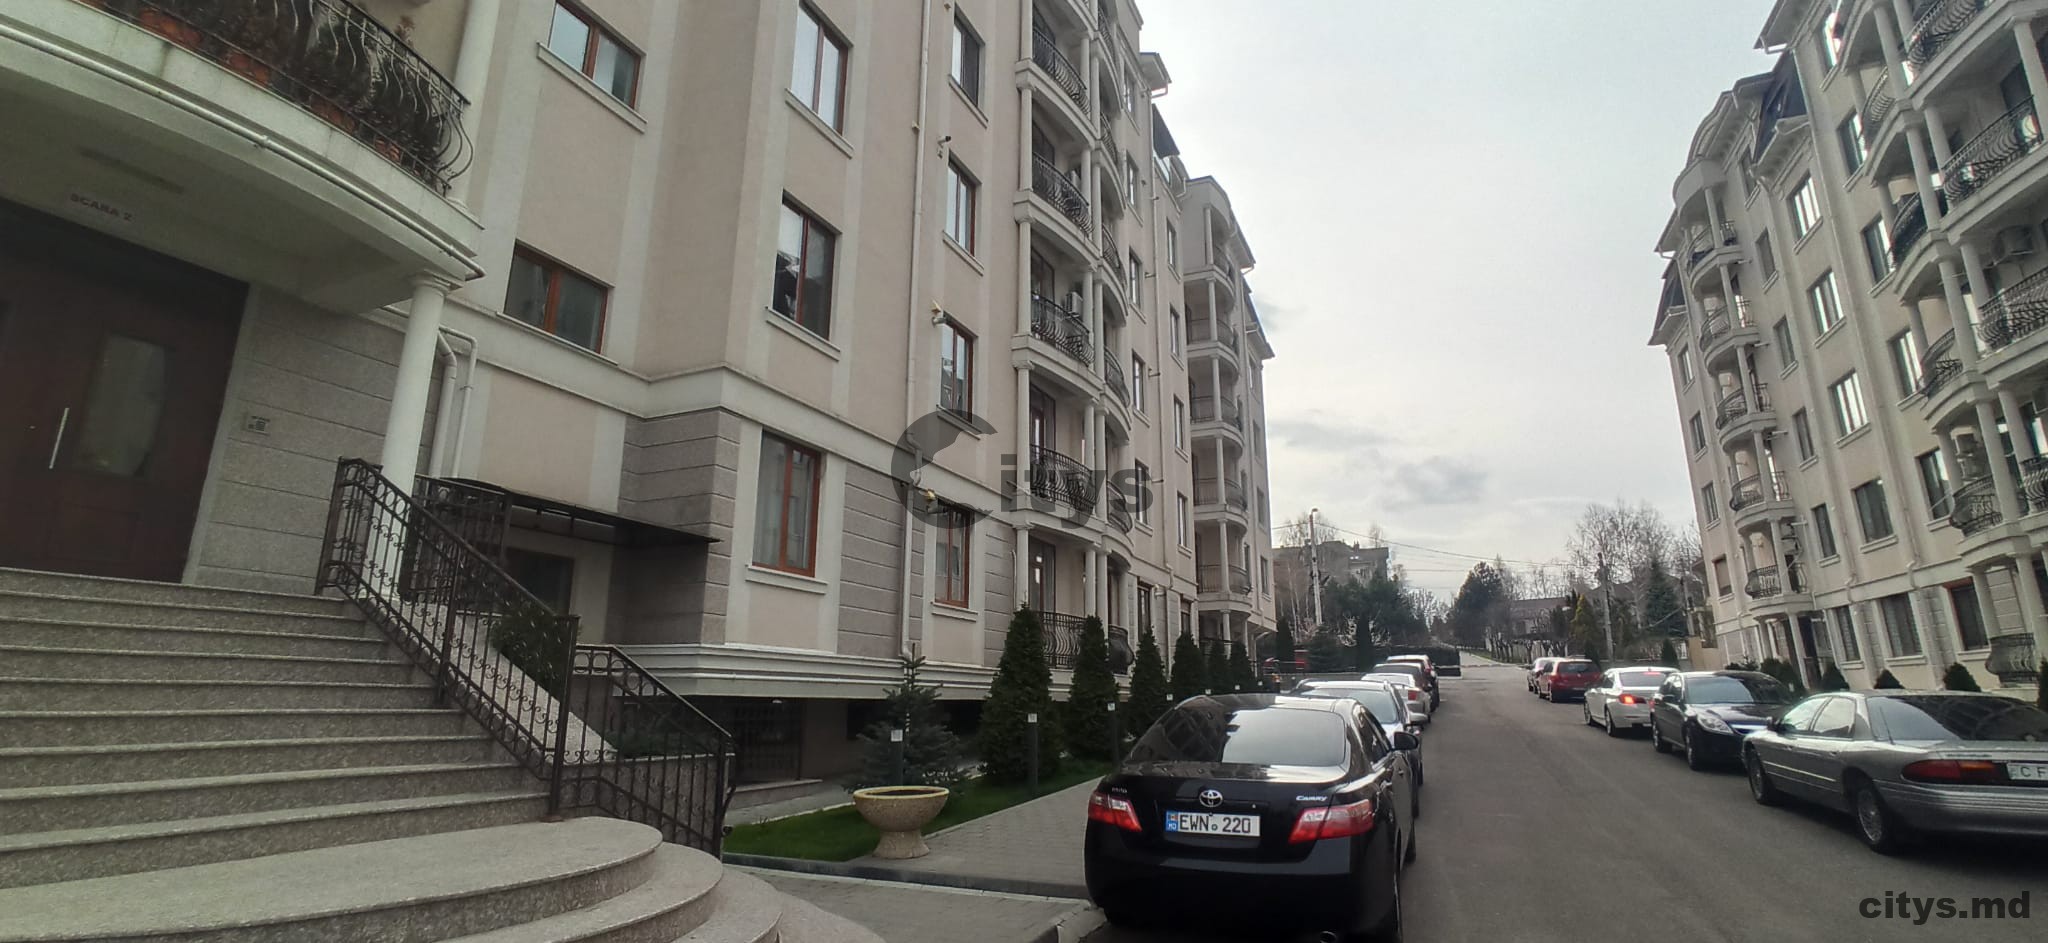 Аренда 1 комнатная квартира, 47м², Moldova, Chișinău, strada Ciocârliei photo 0